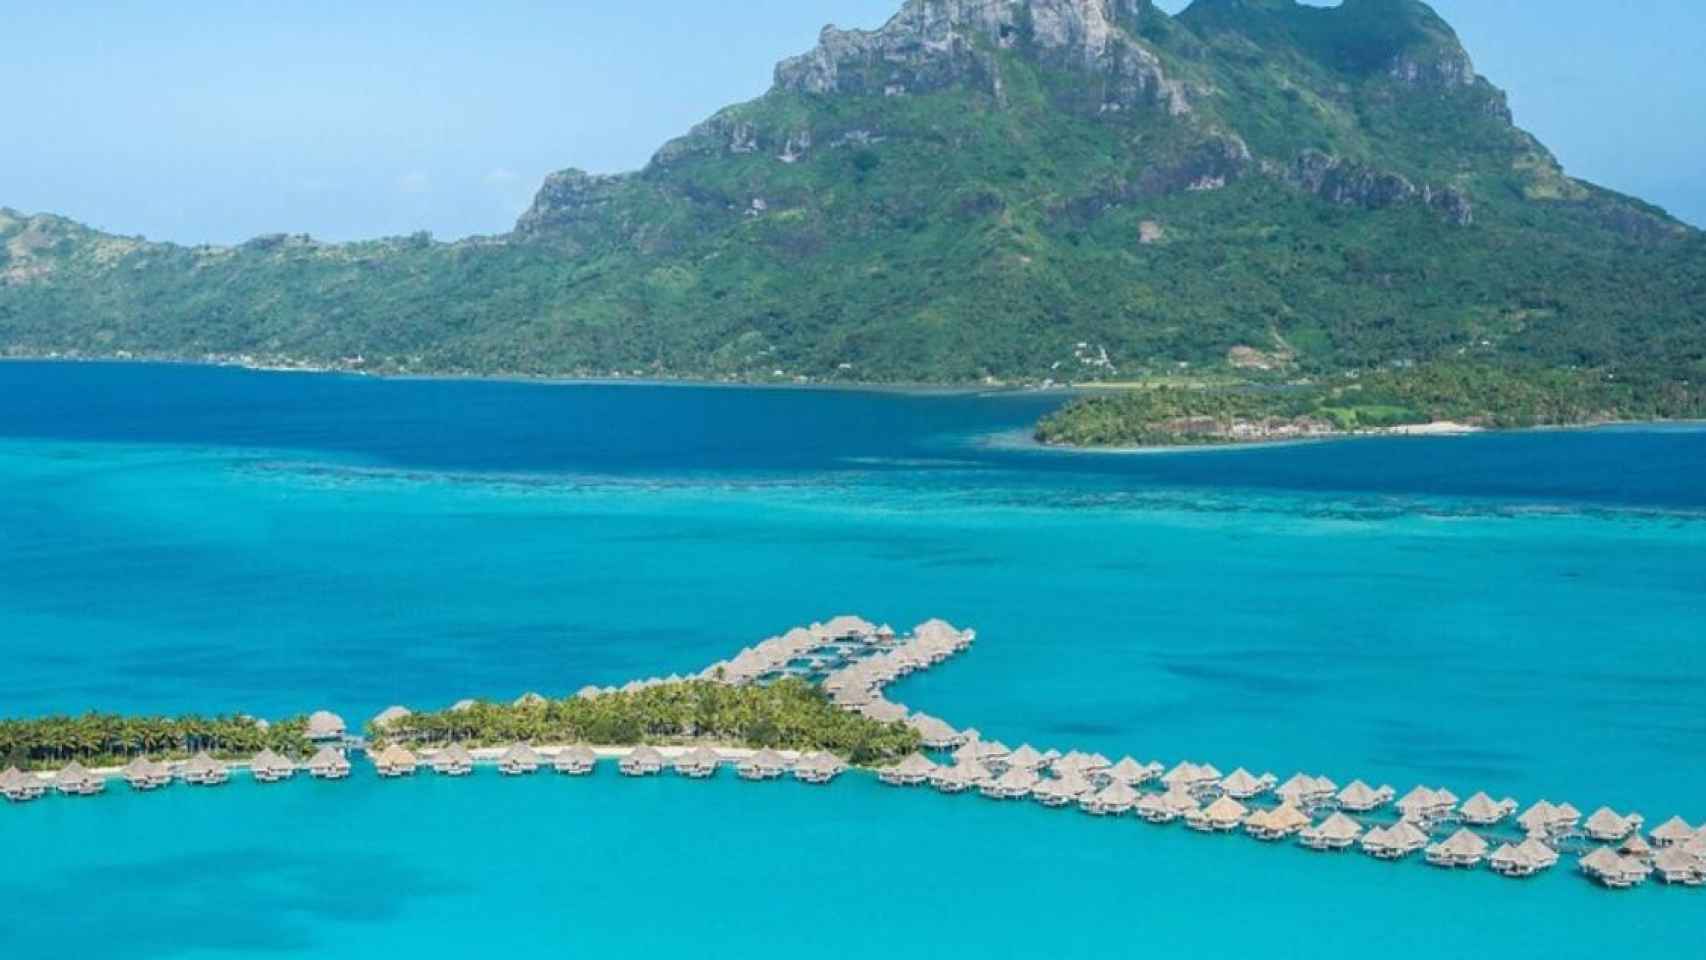 Uno de los hoteles más lujosos del mundo / Site Oficial The St. Regis Bora Bora Resort